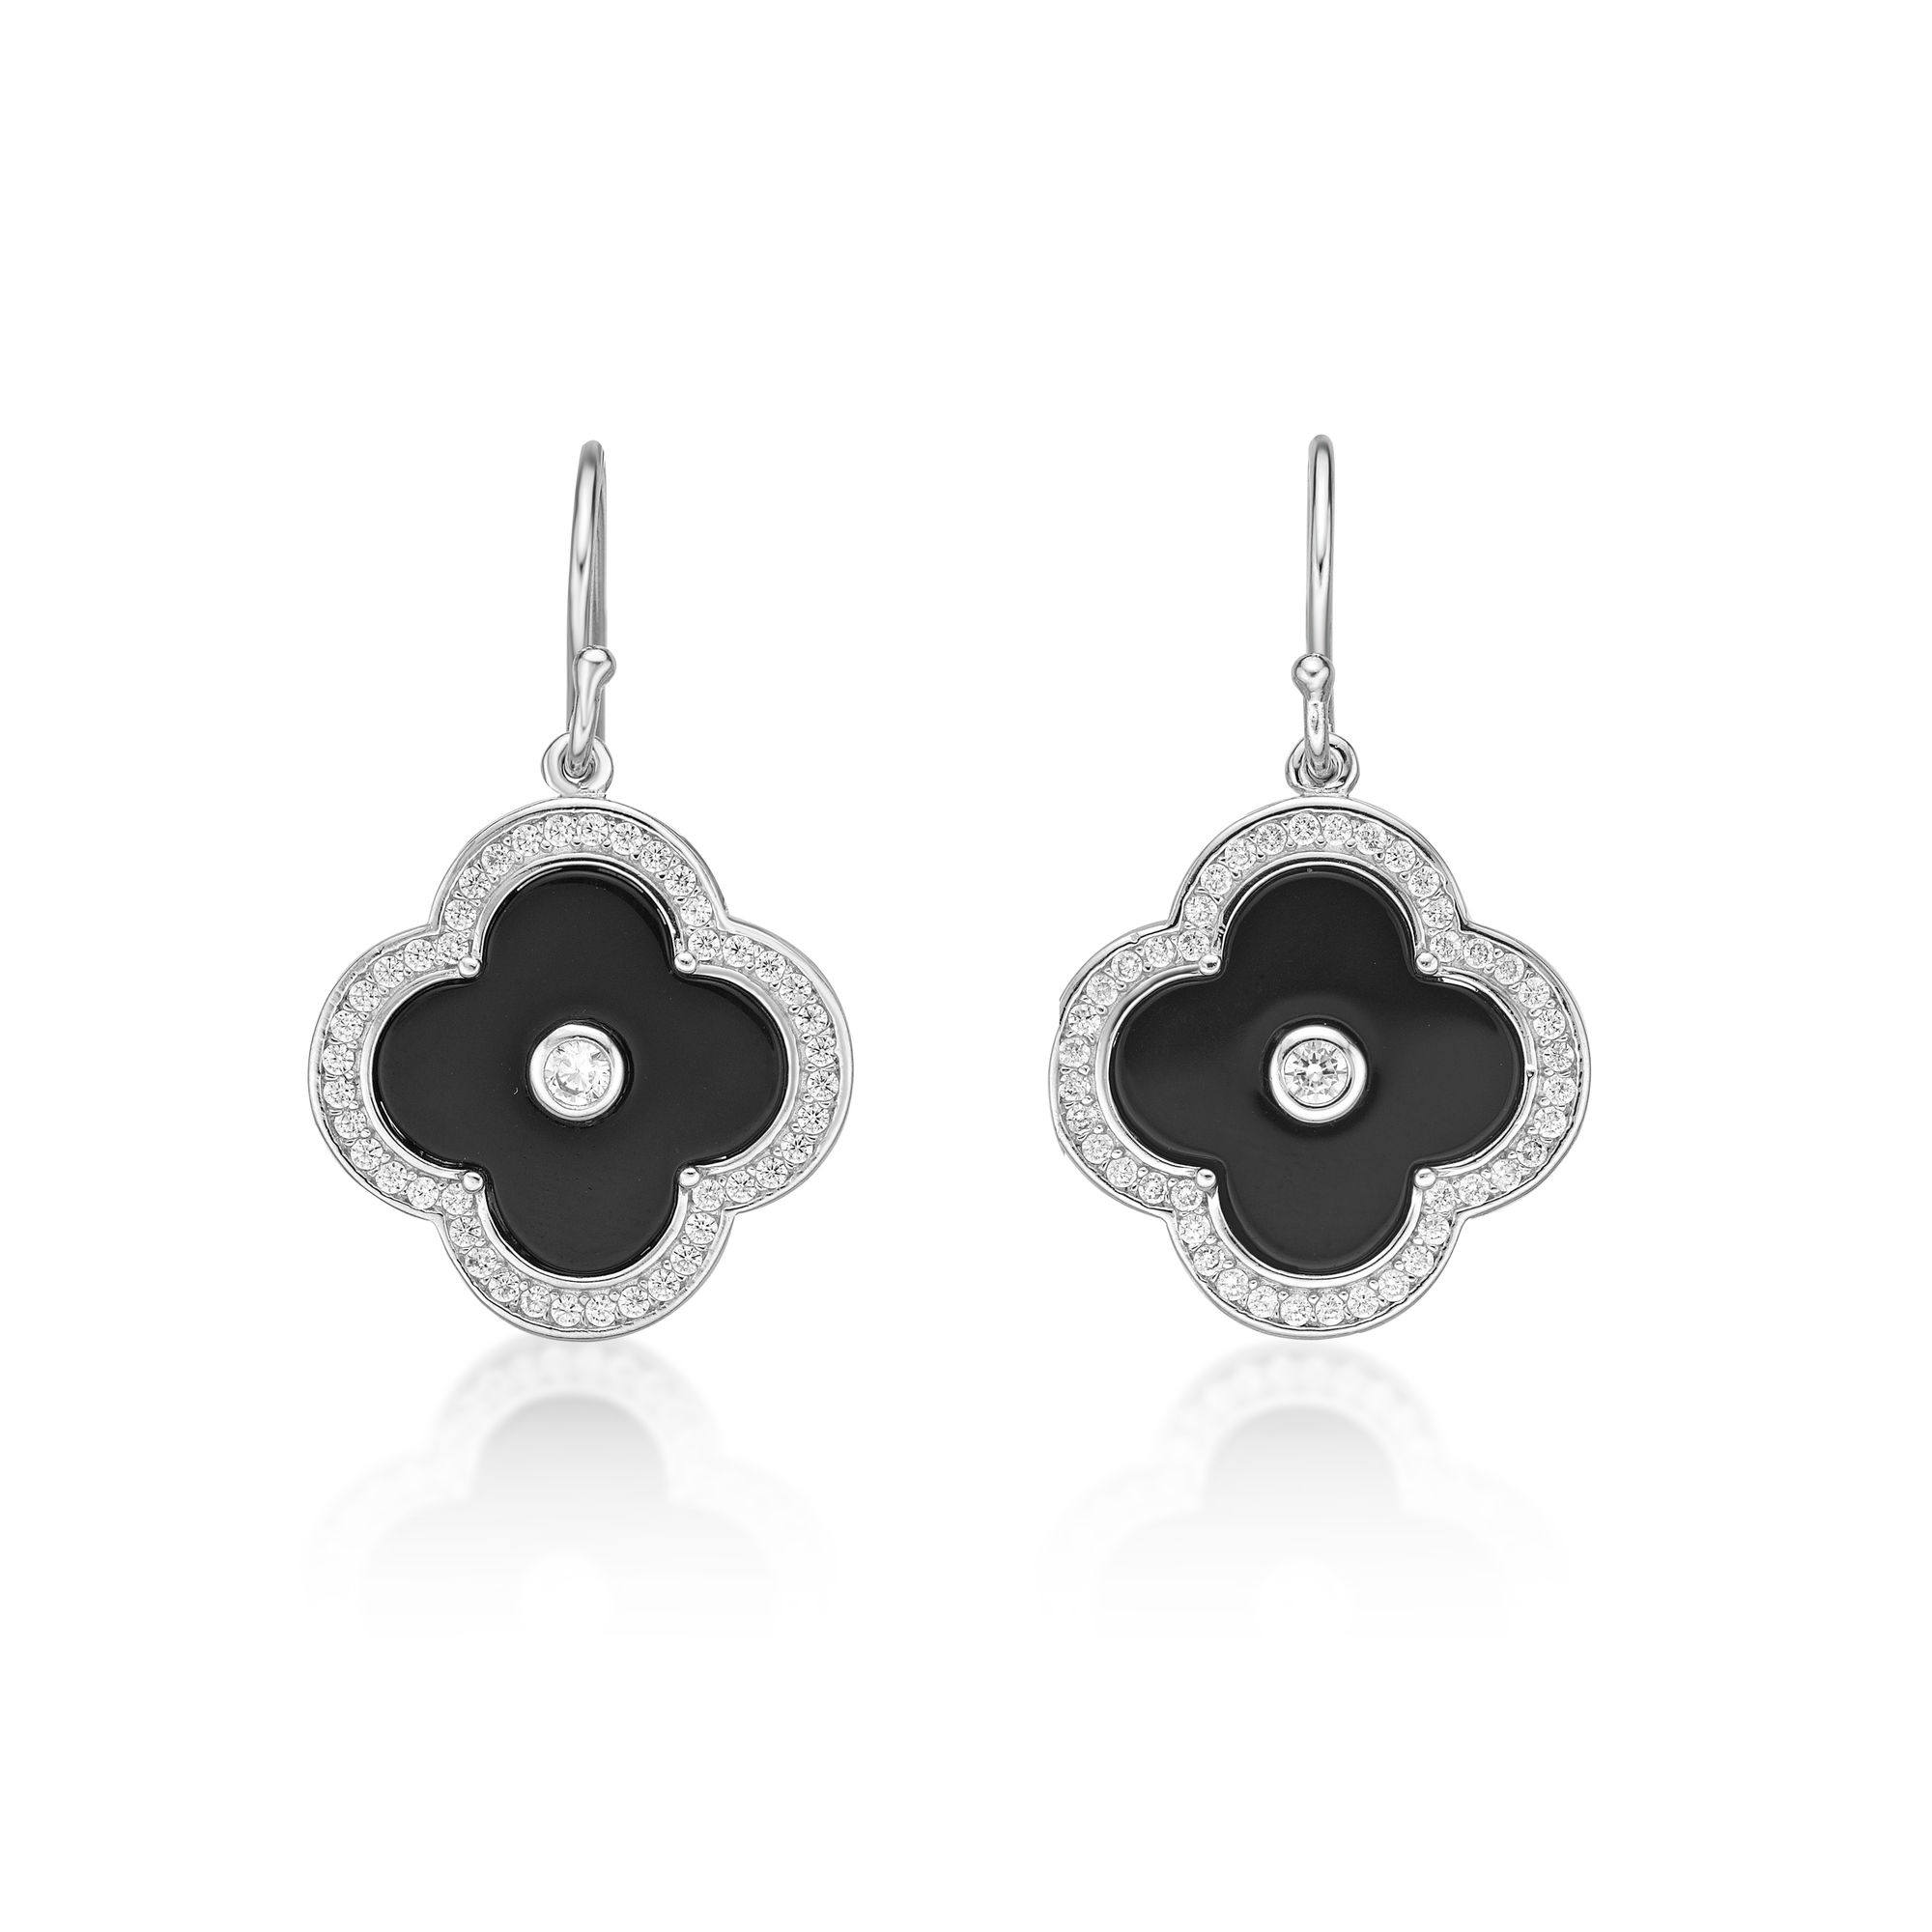 48815-earrings-fashion-jewelry-sterling-silver-48815-3.jpg